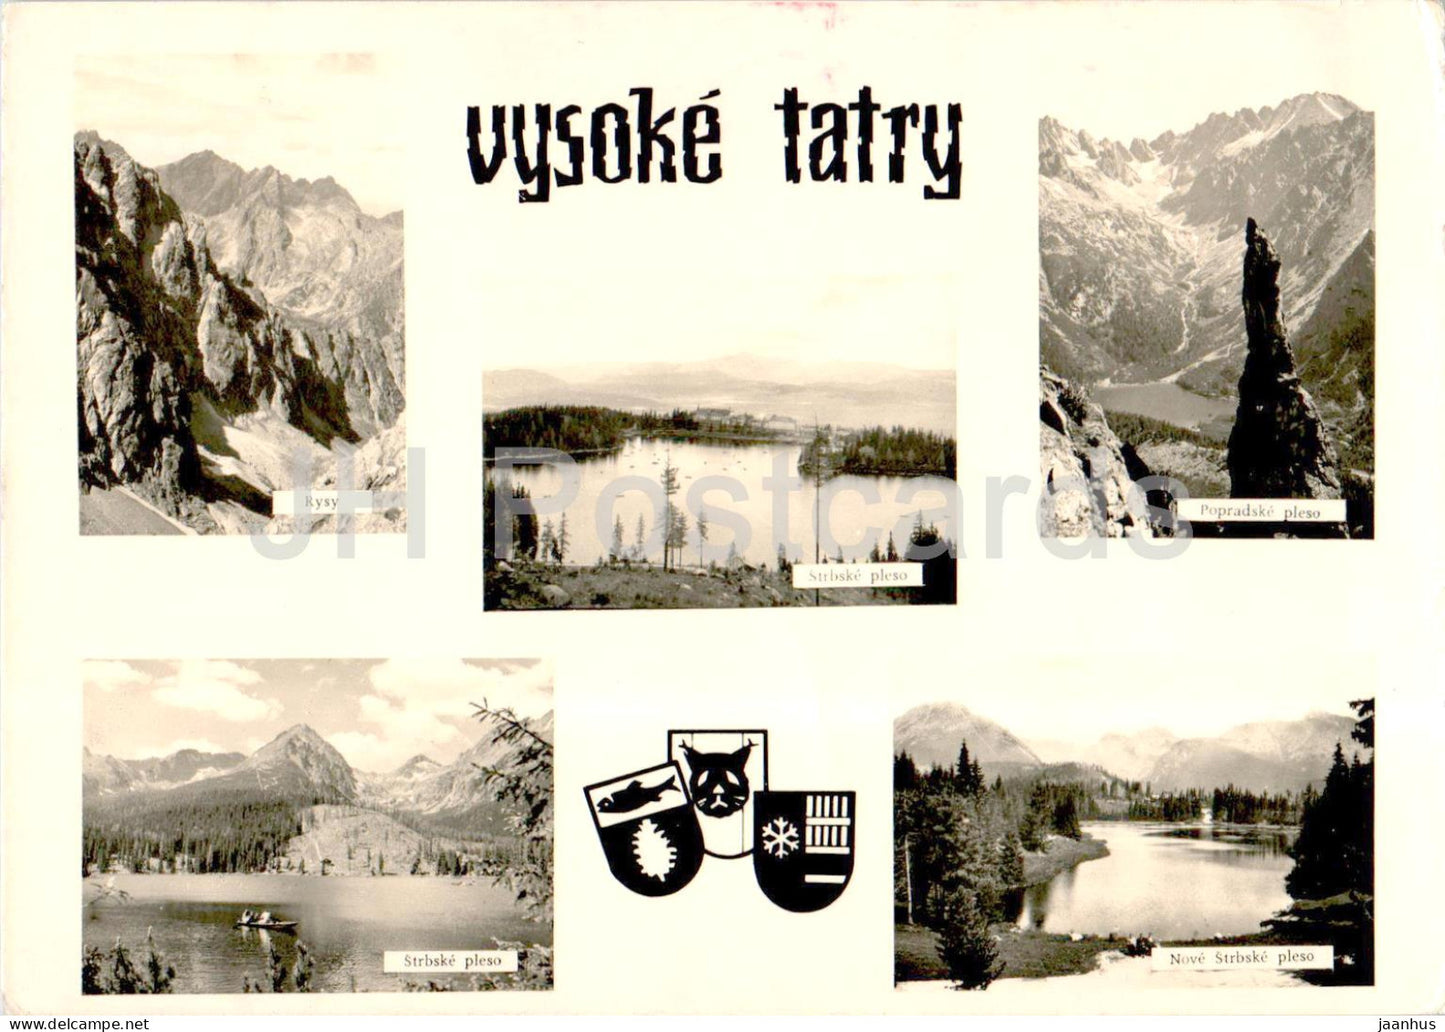 Vysoke Tatra - High Tatras - Rysy - Strbske Pleso - multiview - 1966 - Slovakia - Czechoslovakia - used - JH Postcards